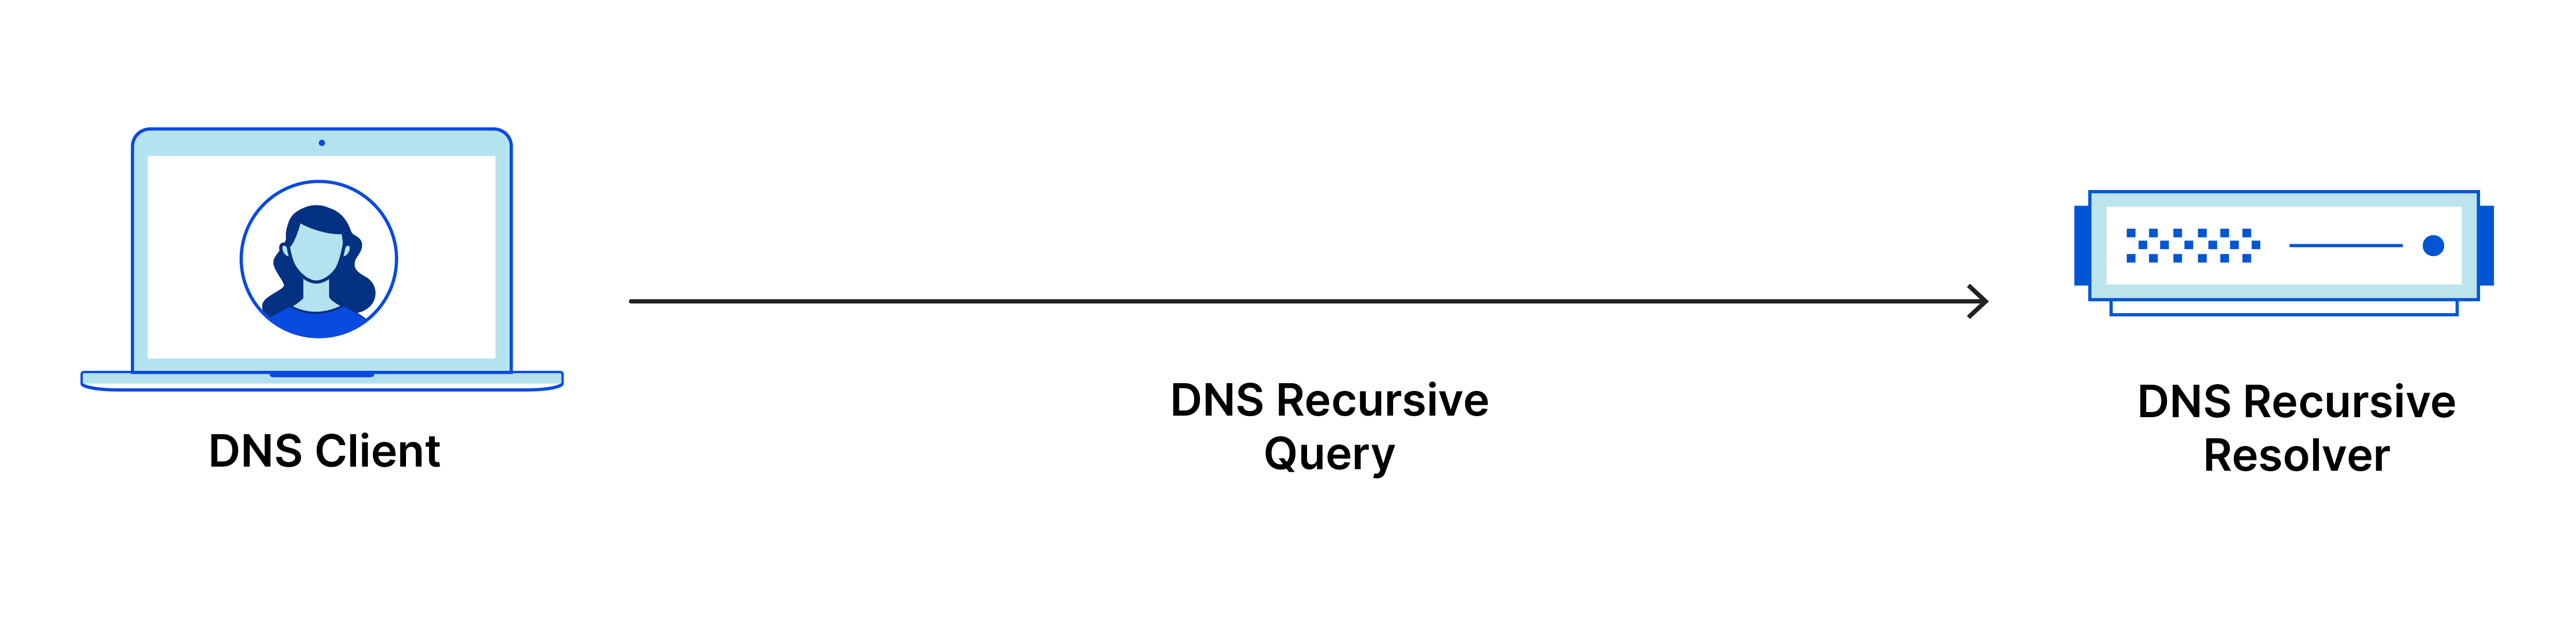 A consulta recursiva de DNS vai do cliente de DNS para o resolvedor de DNS recursivo